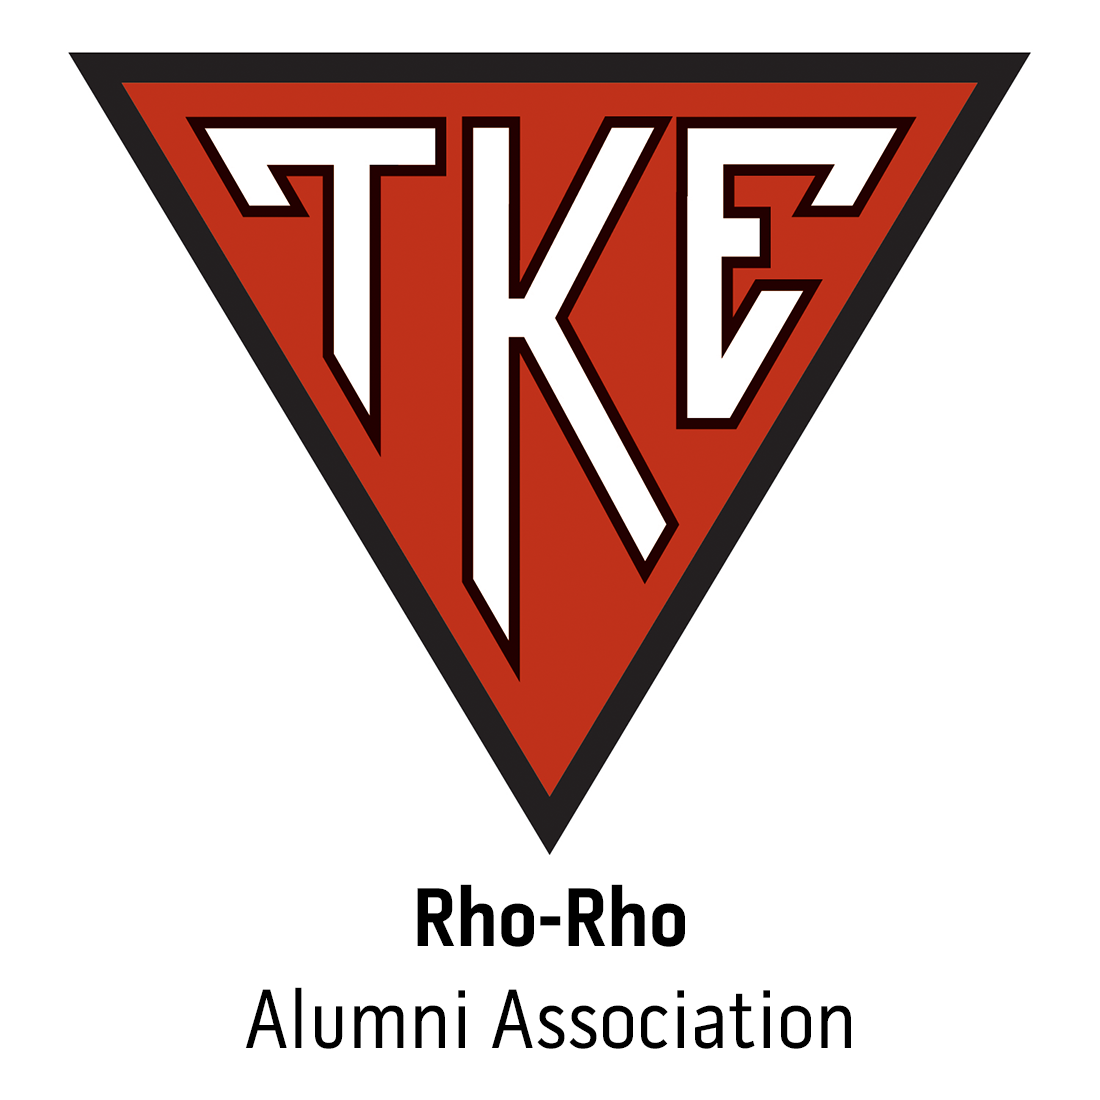 Rho-Rho Alumni Association at Sam Houston State University